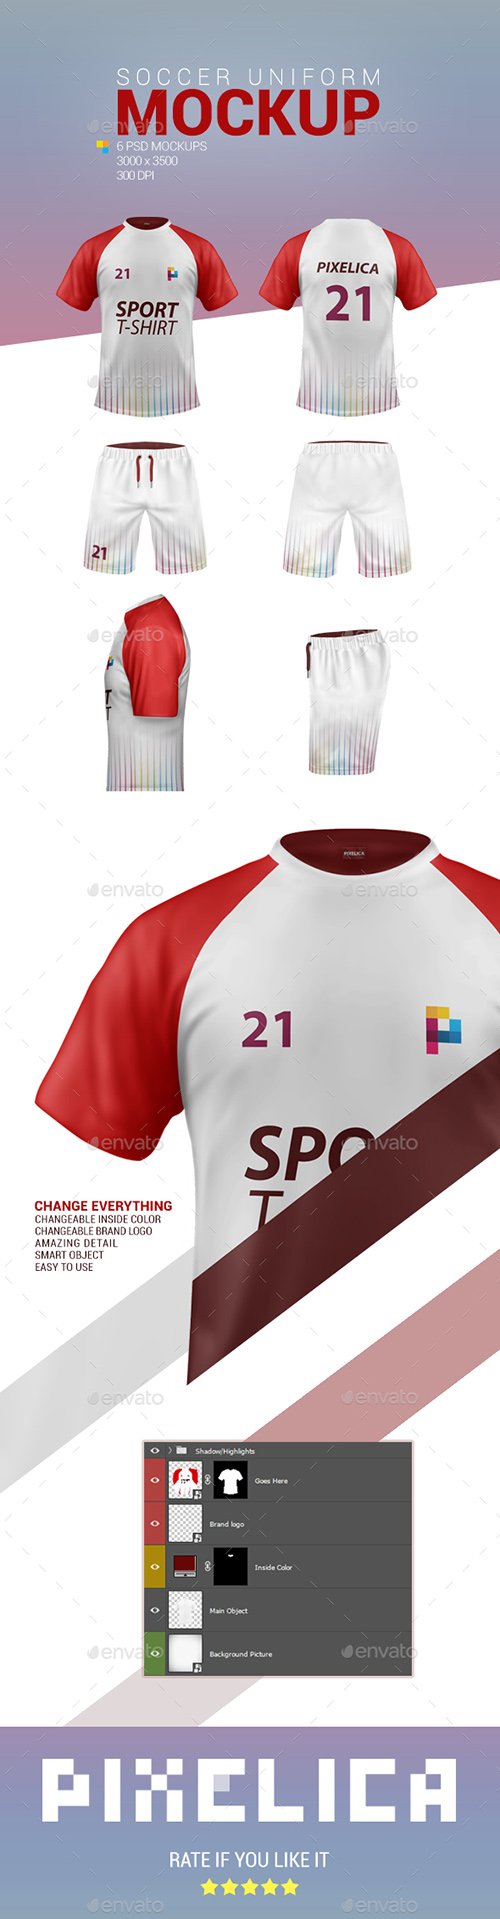 GR - Soccer Football Uniform Mockup 22914979